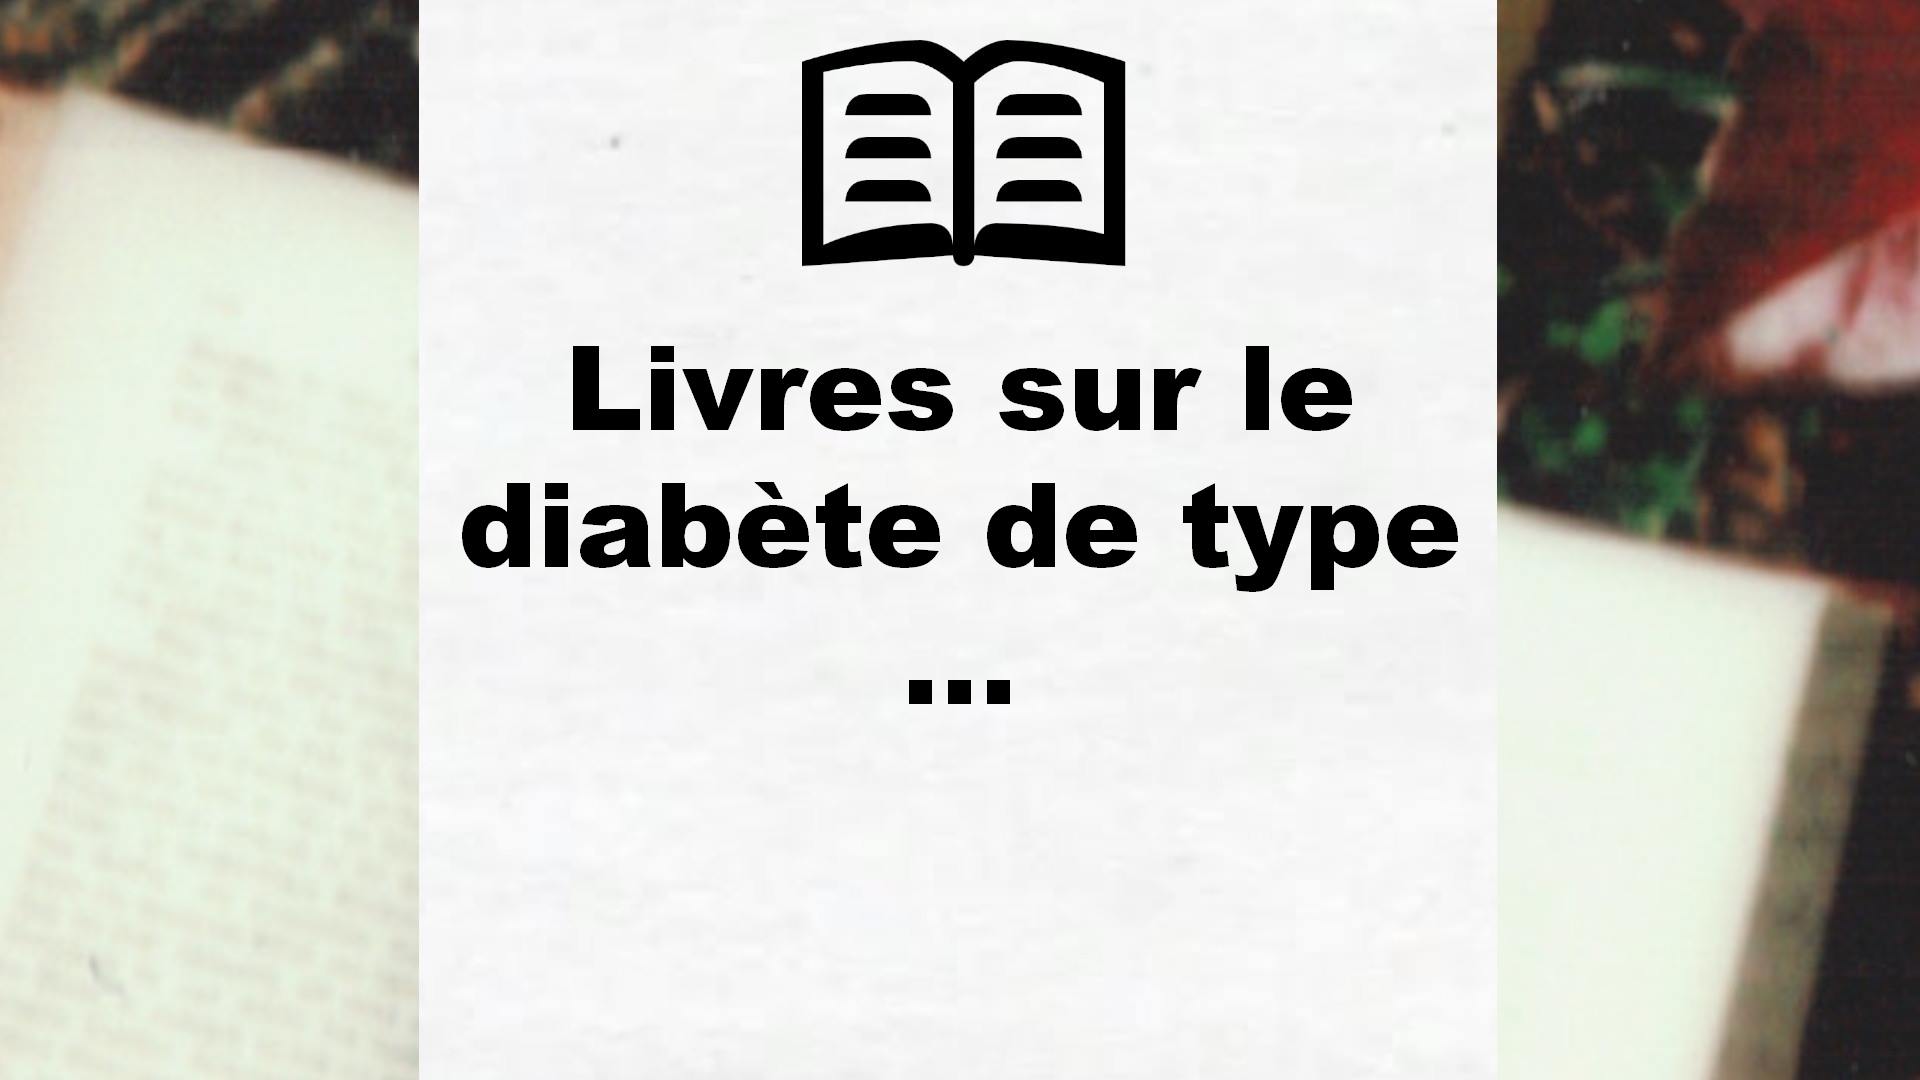 Livres sur le diabète de type 1